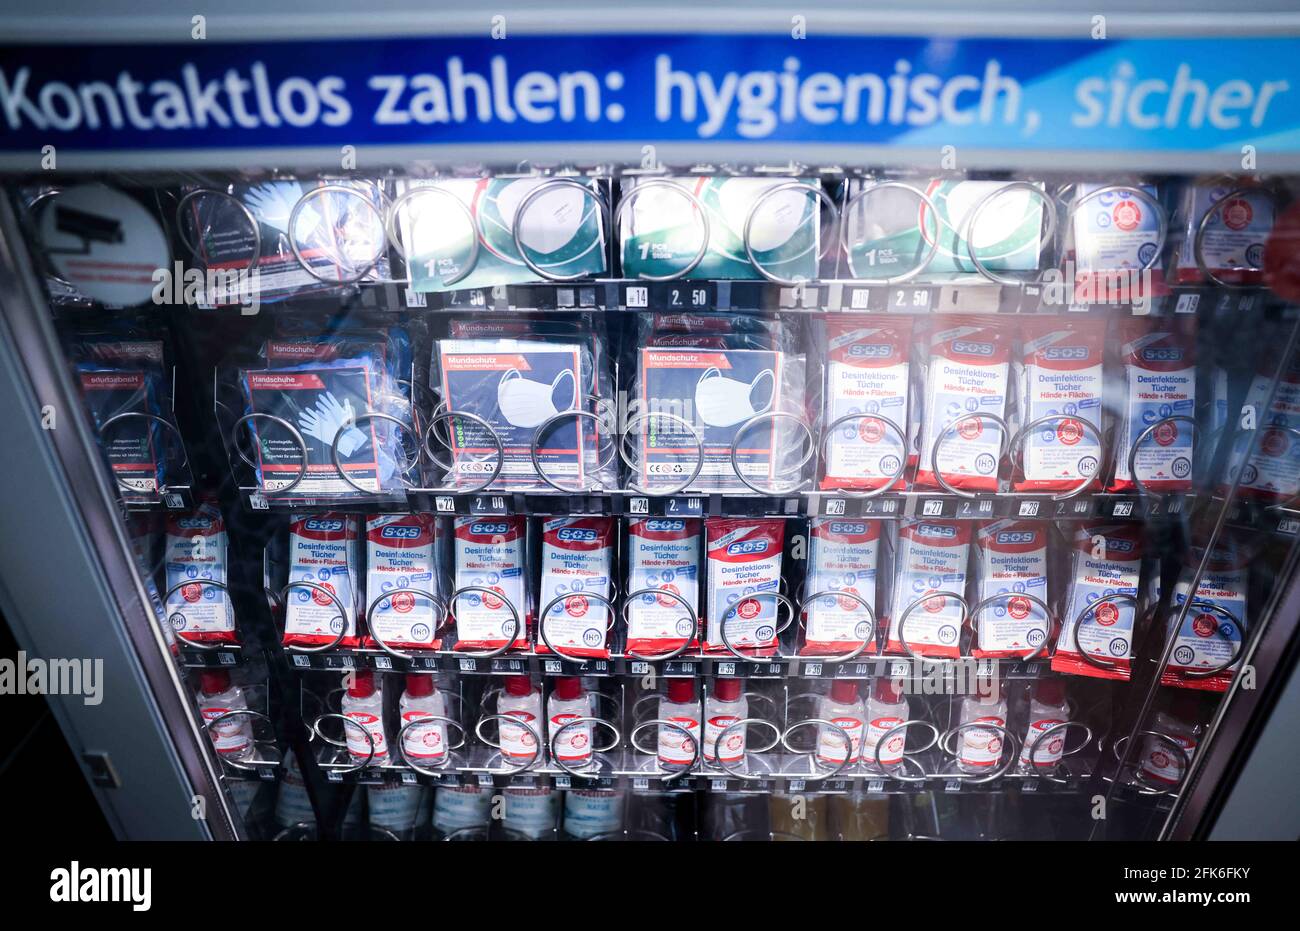 Drinks in vending machine germany -Fotos und -Bildmaterial in